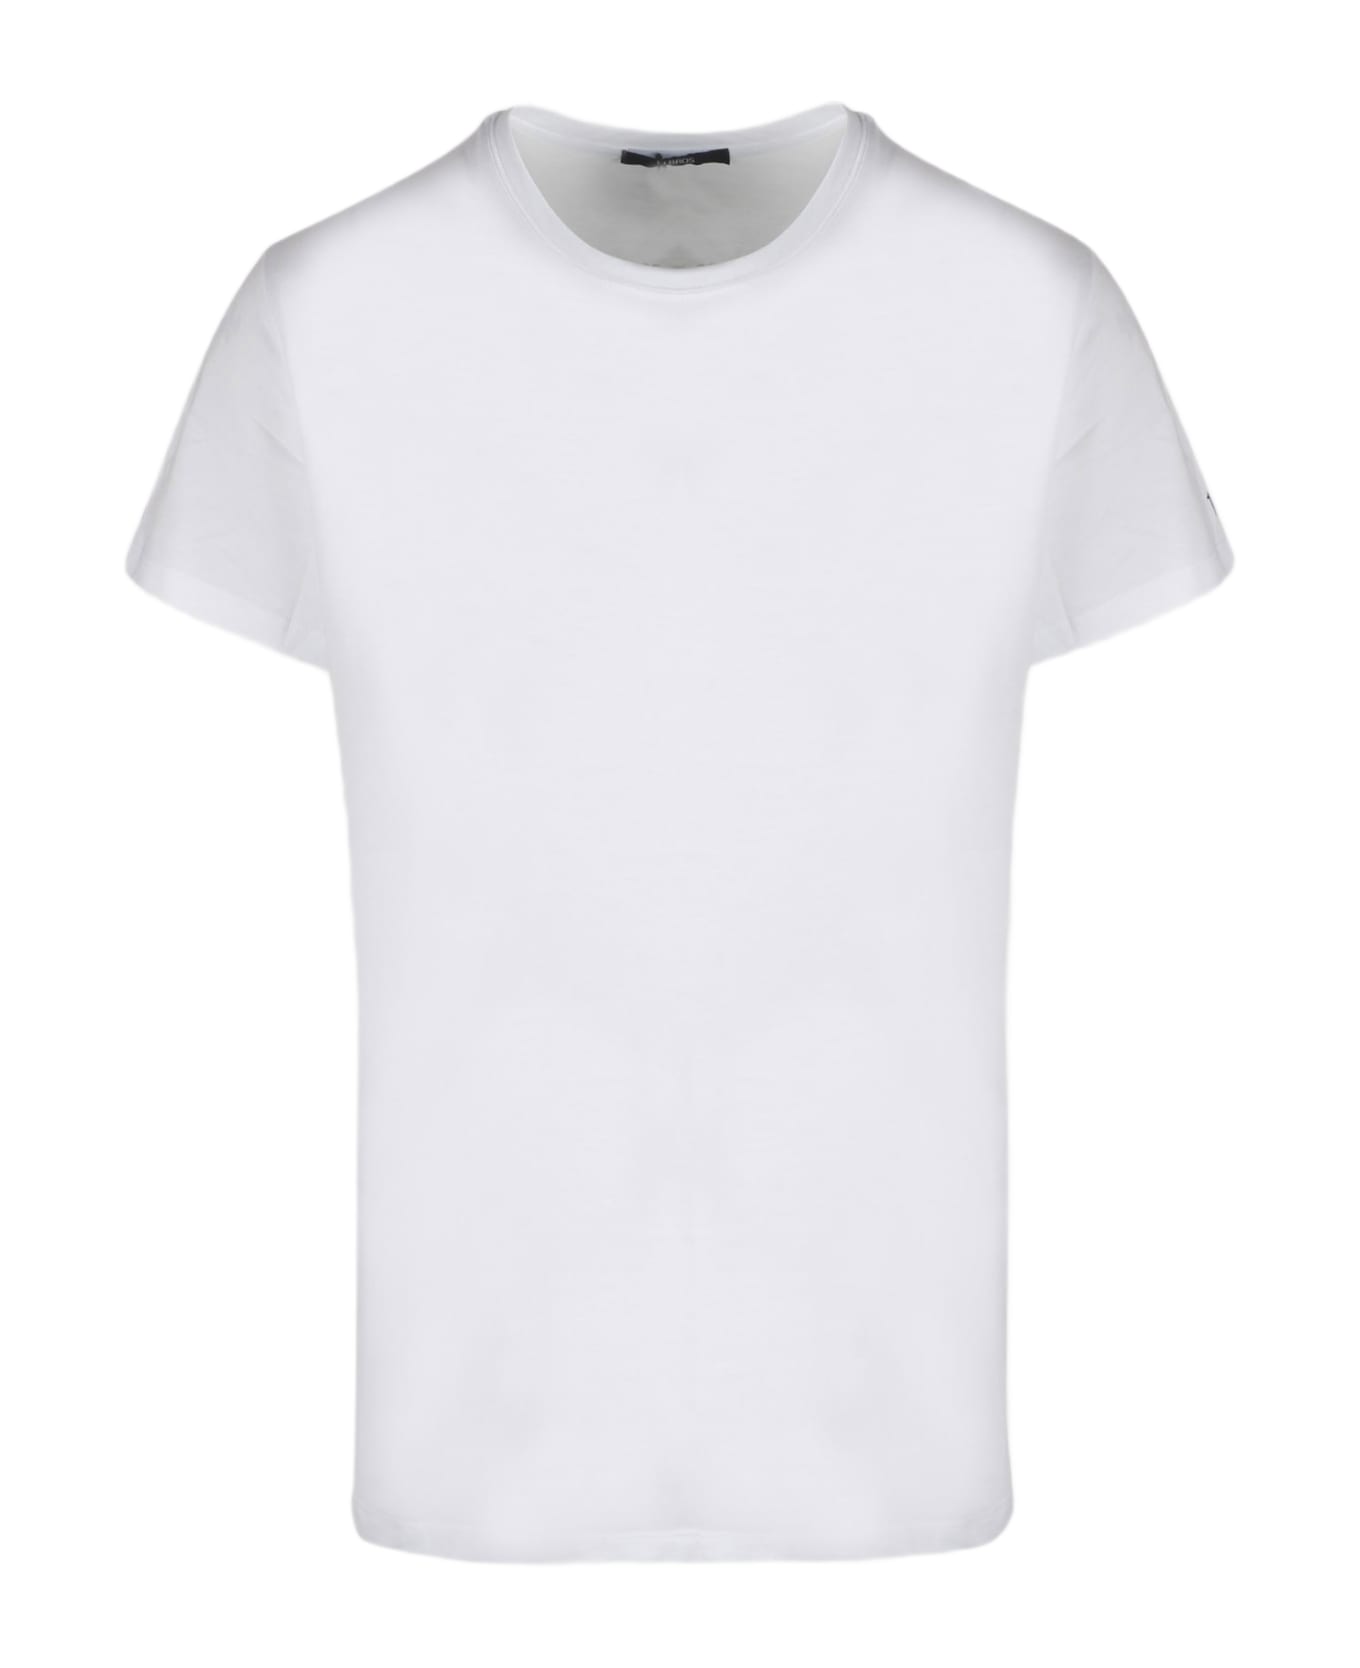 14 Bros Basic T-shirt - White